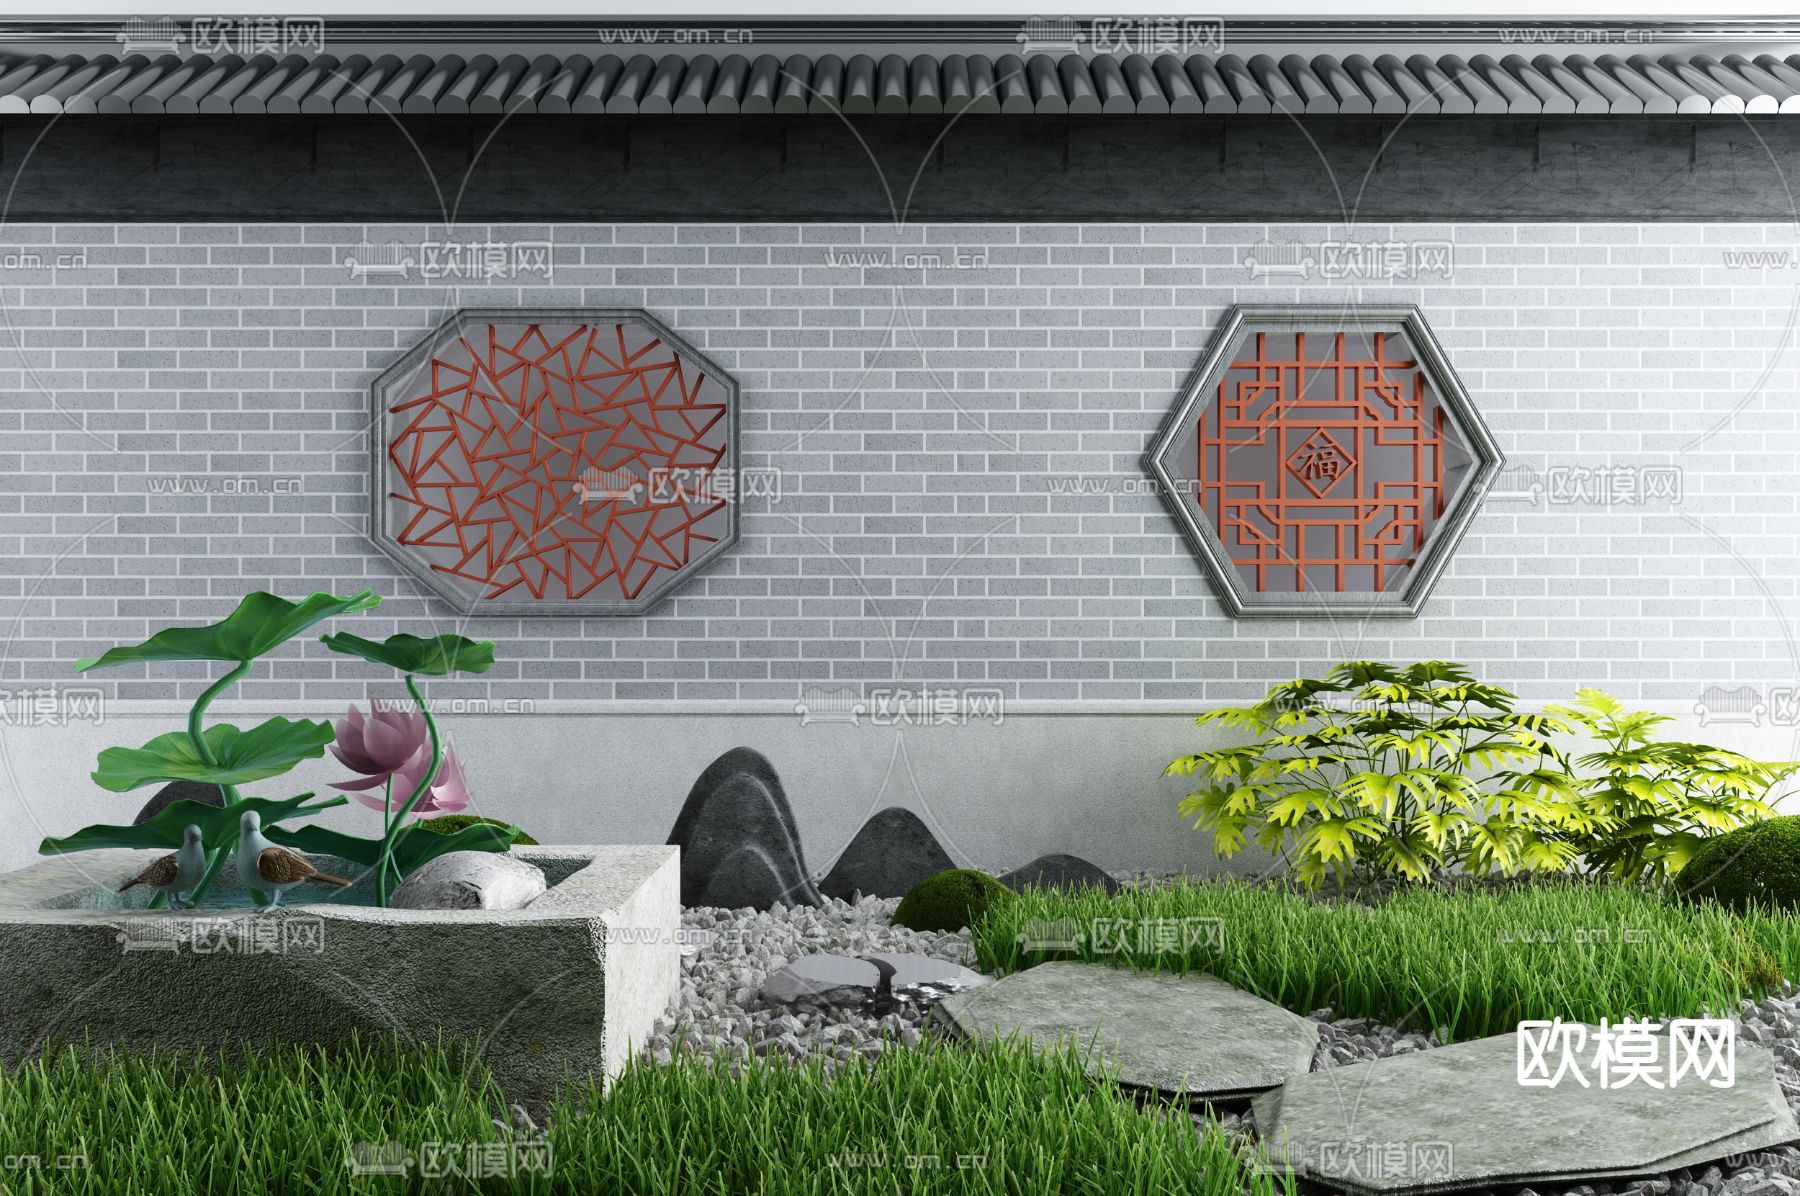 09新中式别墅建筑围墙院墙入口大门3d模型下载-【集简空间】「每日更新」